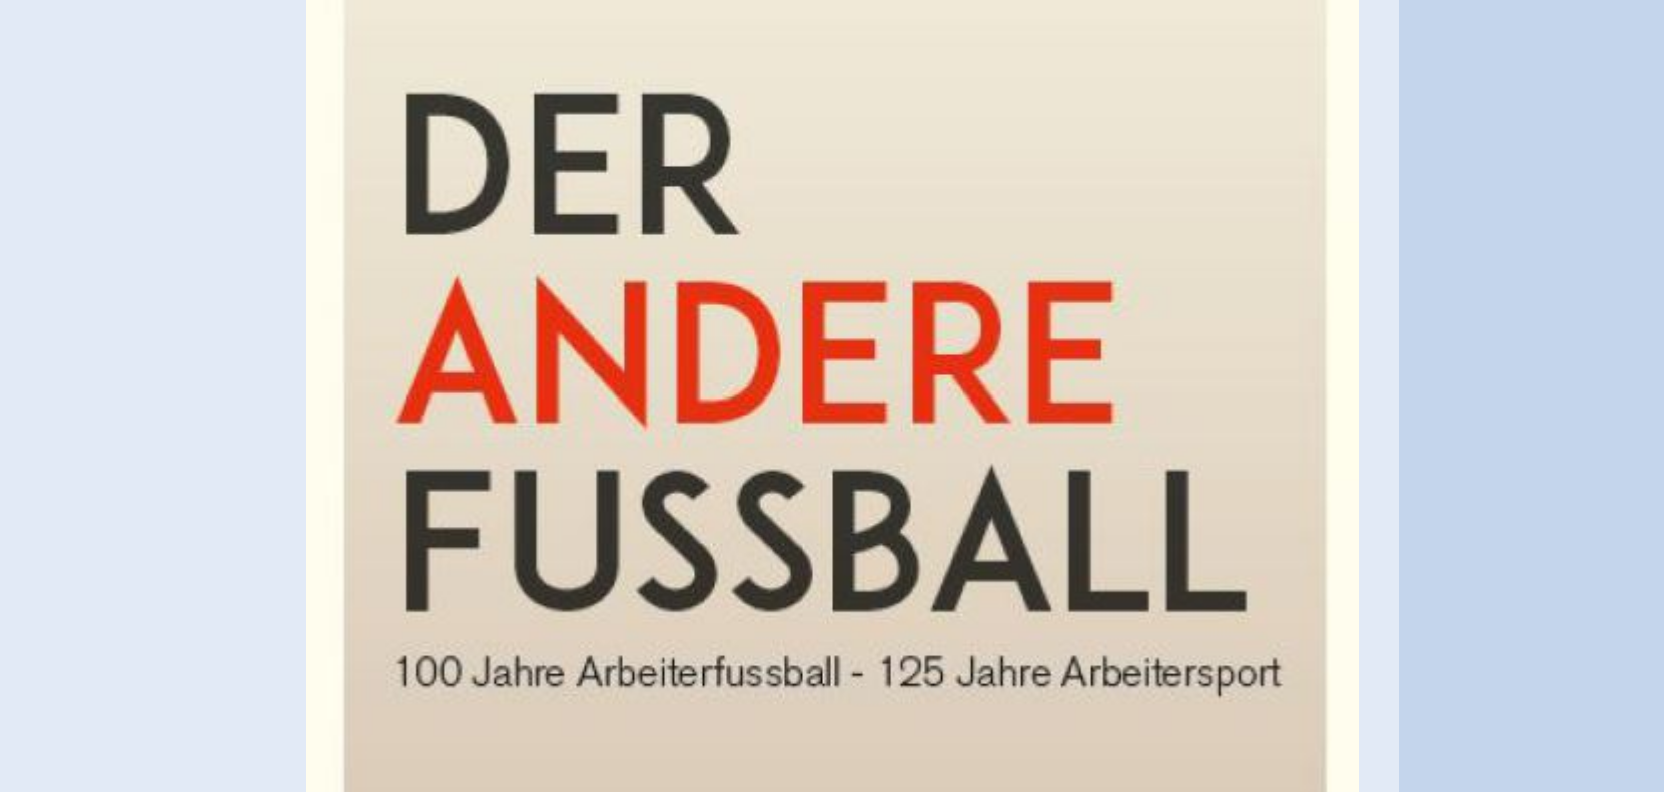 Der andere Fußball: 100 Jahre Arbeiterfußball – 125 Jahre Arbeitersport